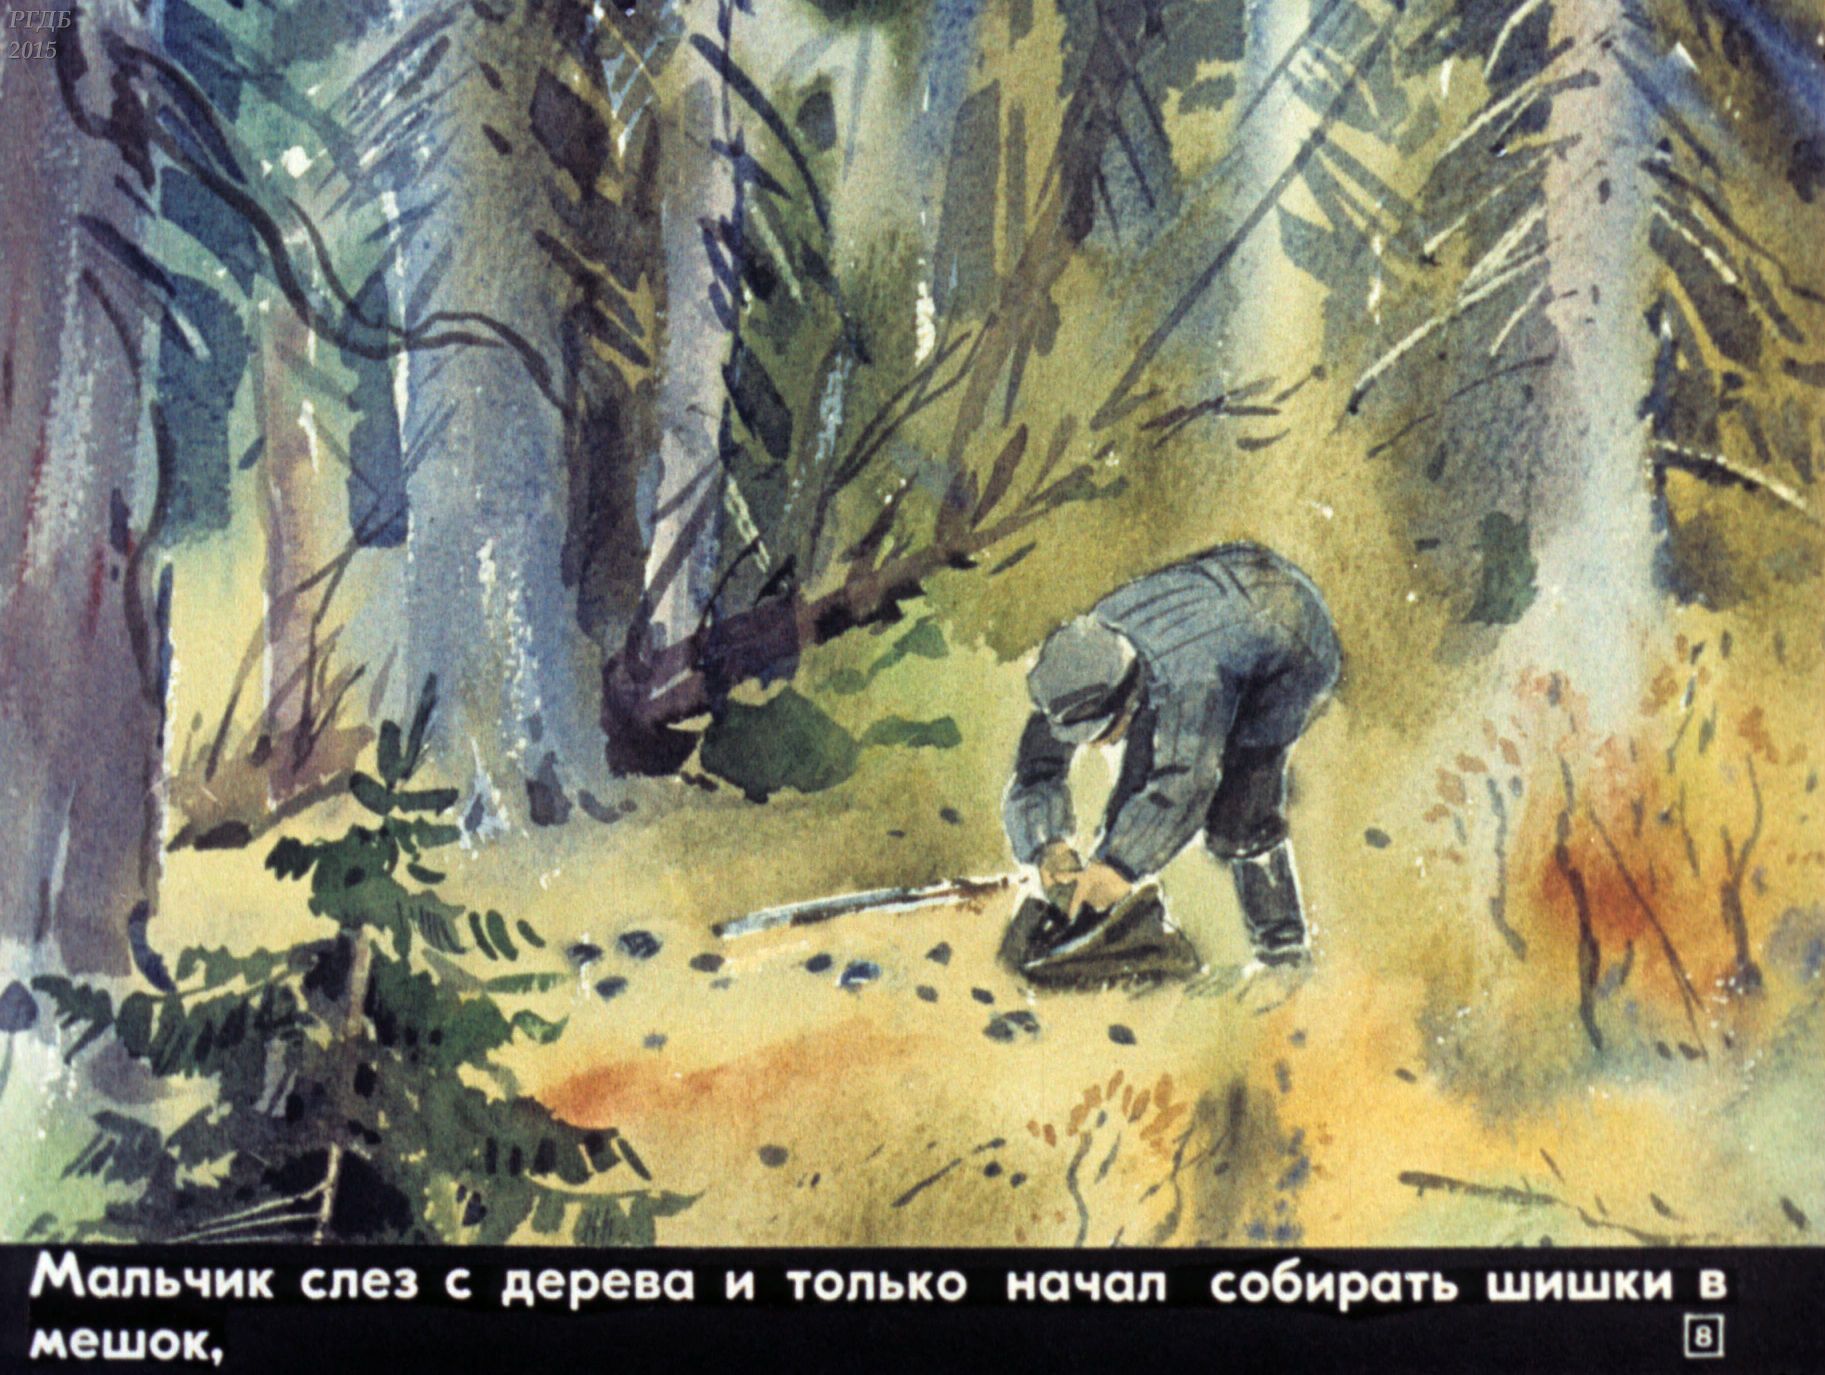 Аудиозапись рассказа васюткино озеро. Иллюстрация к рассказу Астафьева Васюткино оз. Васюткино озеро Васютка.